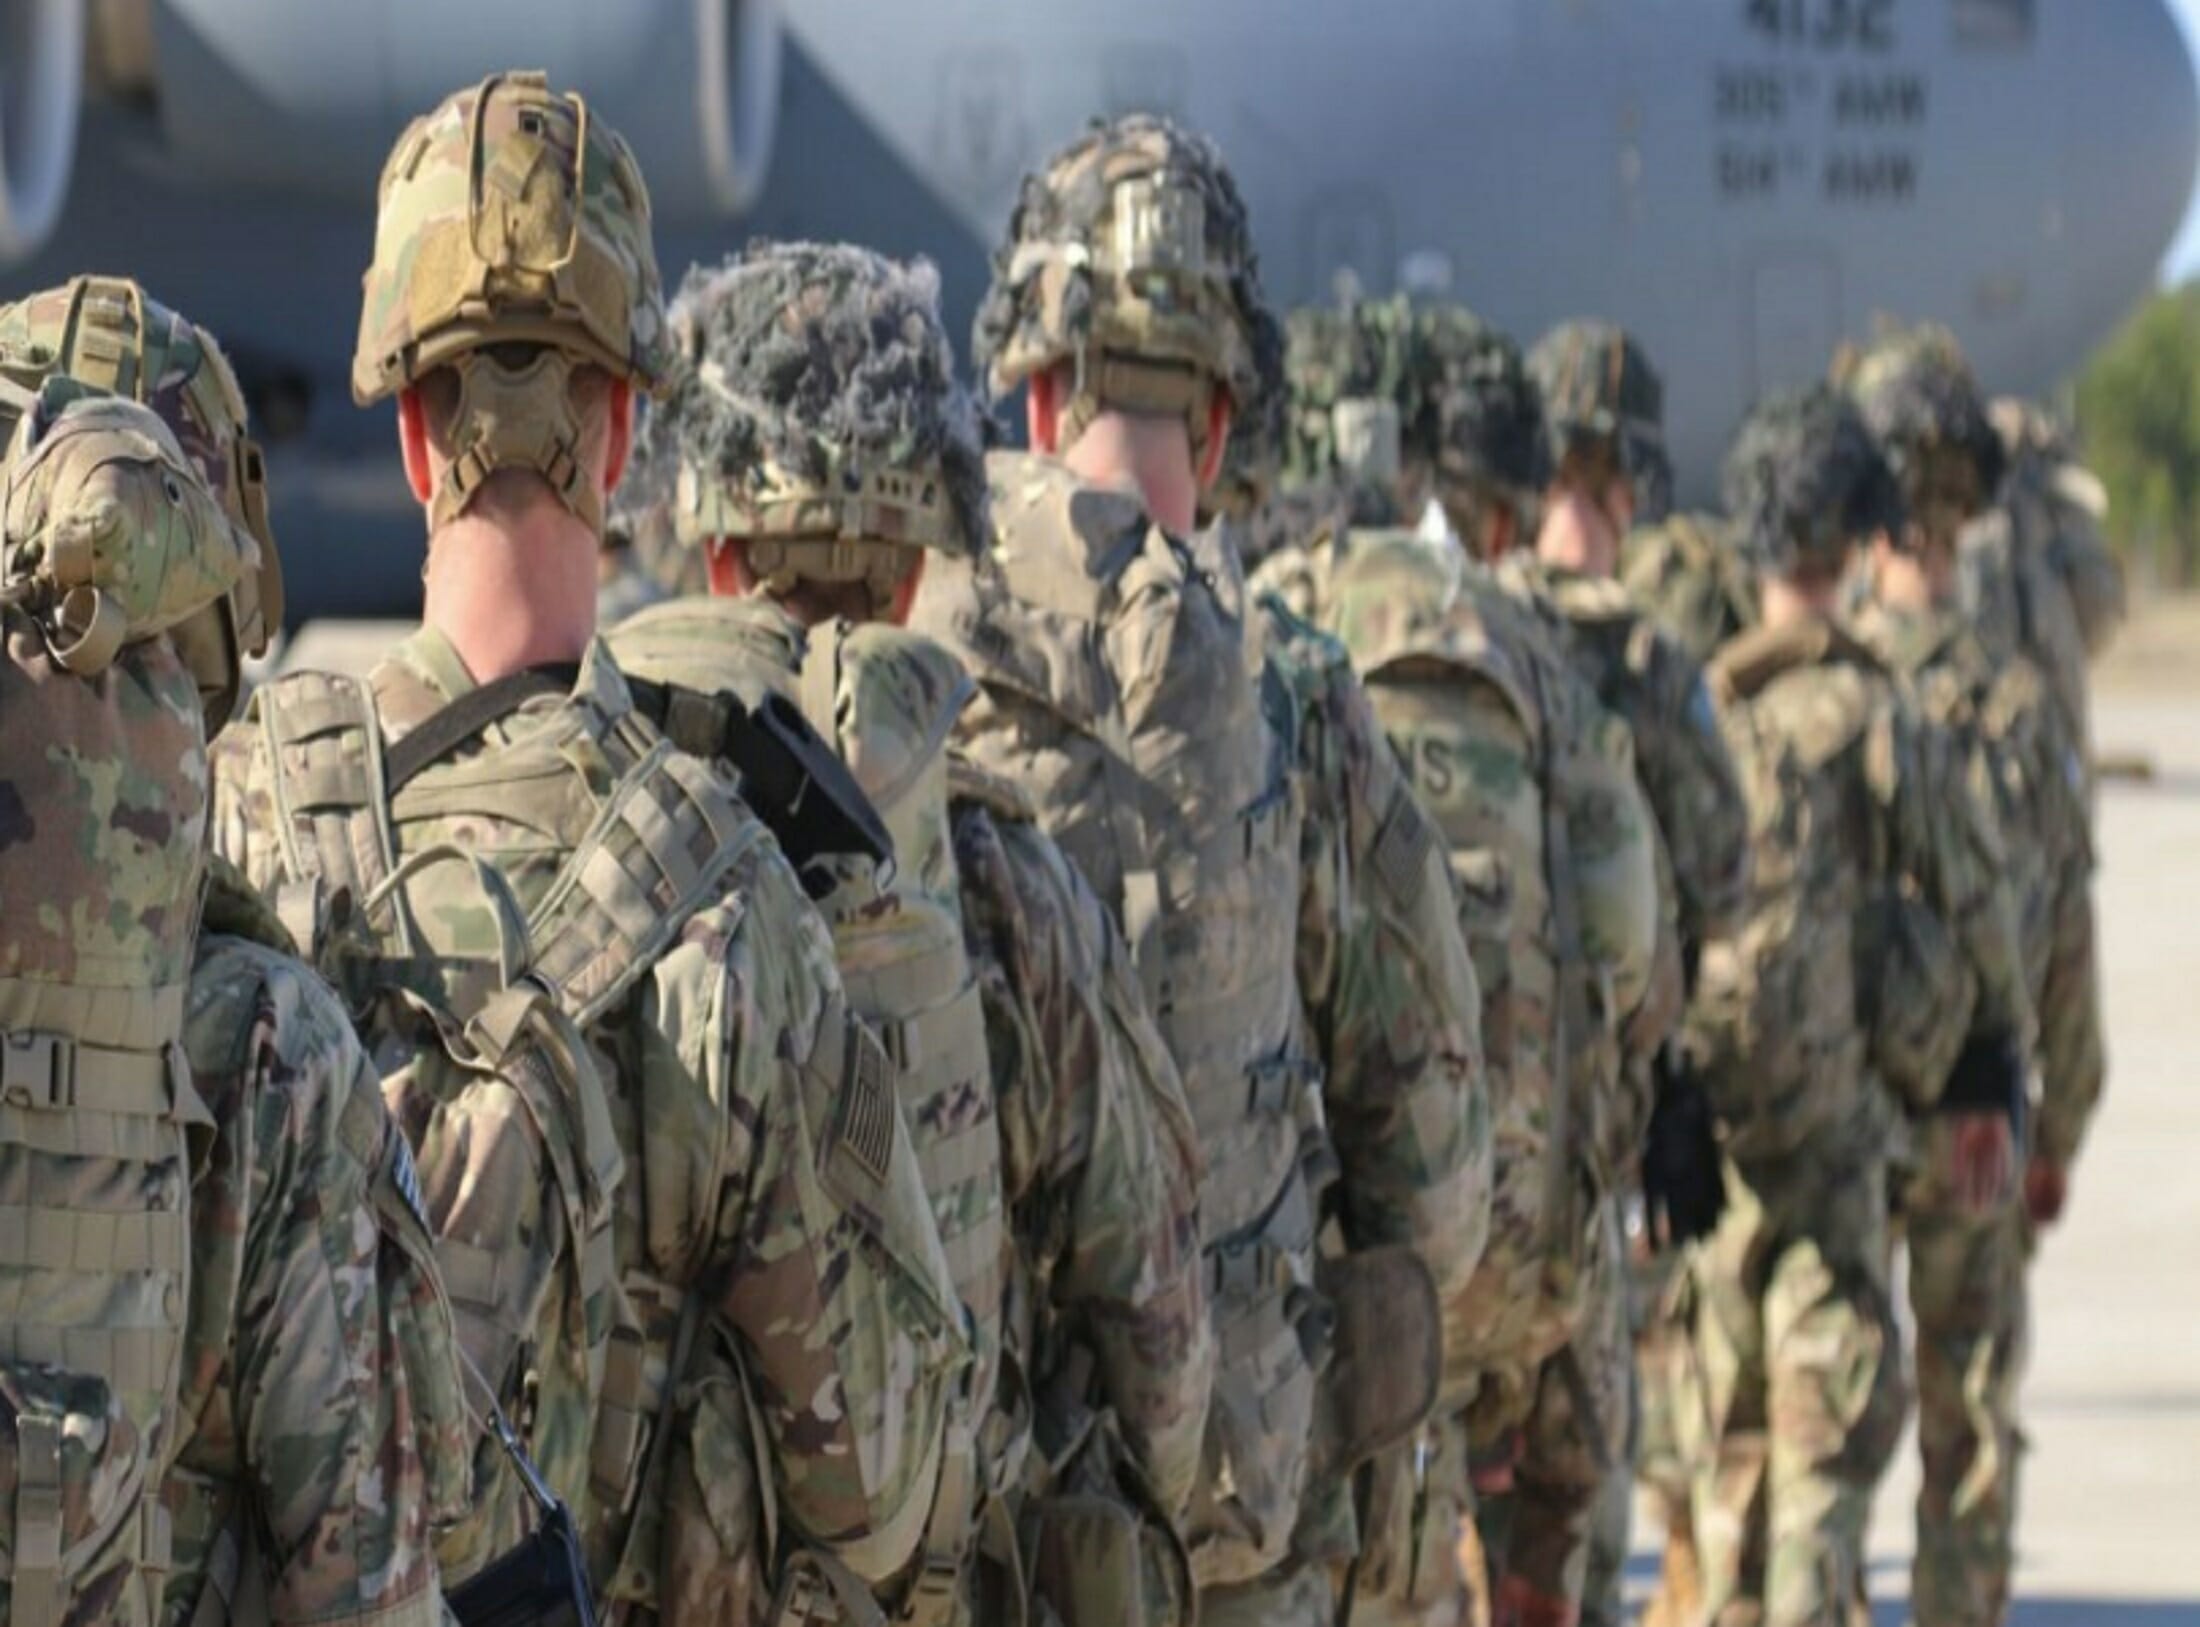 Συνεχίζονται με απώλειες οι «ατελείωτοι» πόλεμοι για τις ΗΠΑ! Δύο νεκροί Αμερικανοί στρατιώτες στο Ιράκ